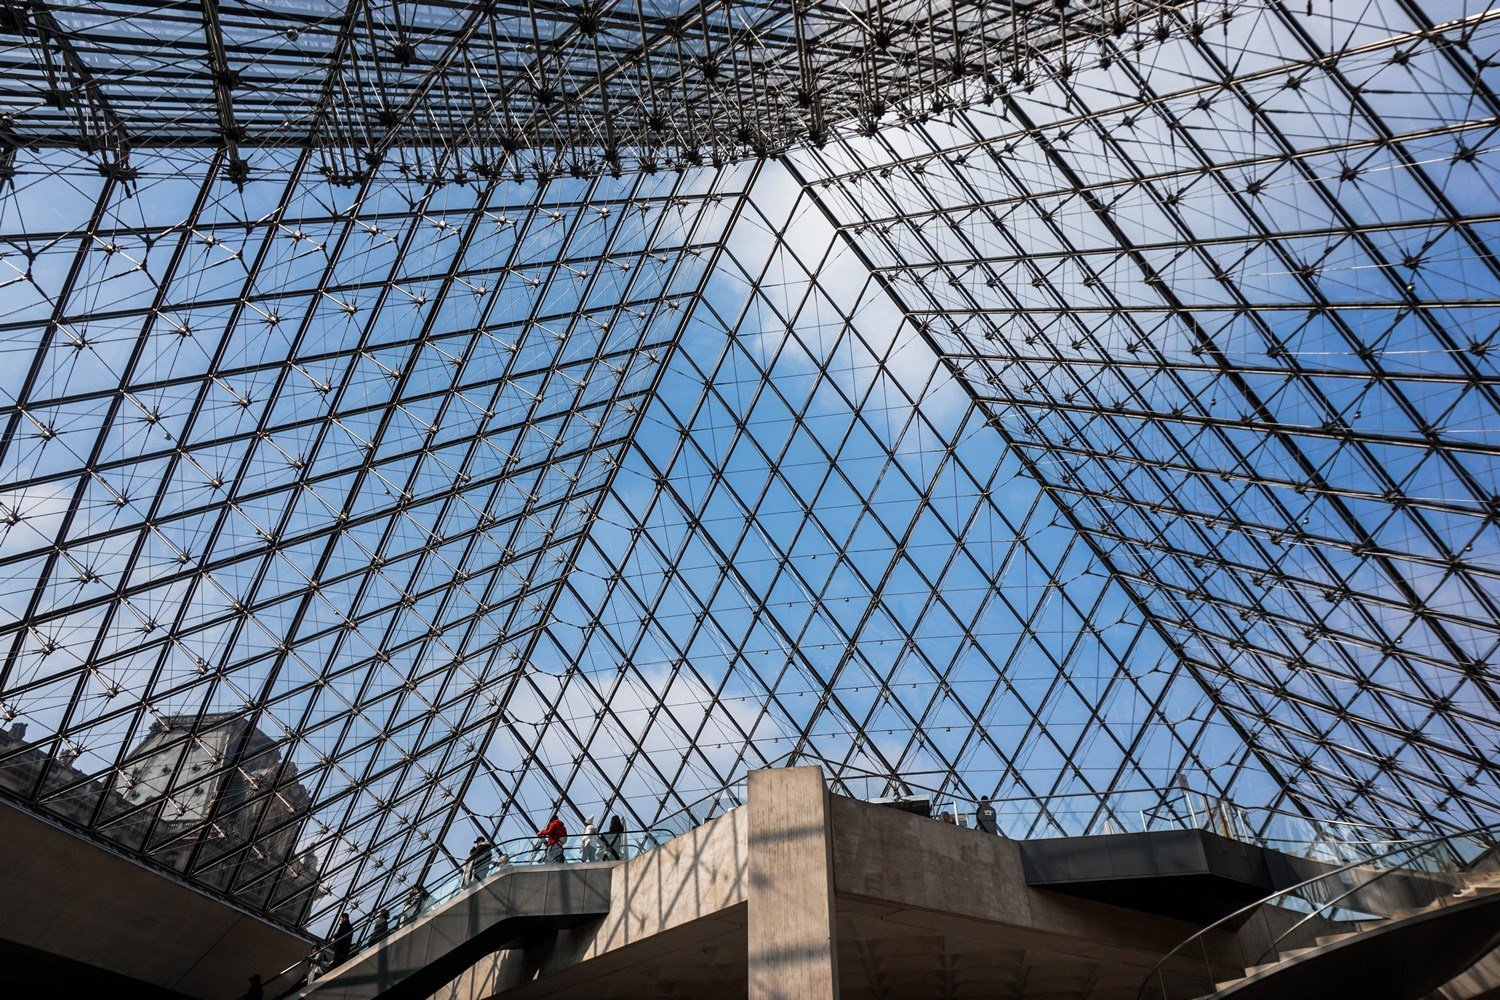 Paris-Louvre-Musée-Tuileries